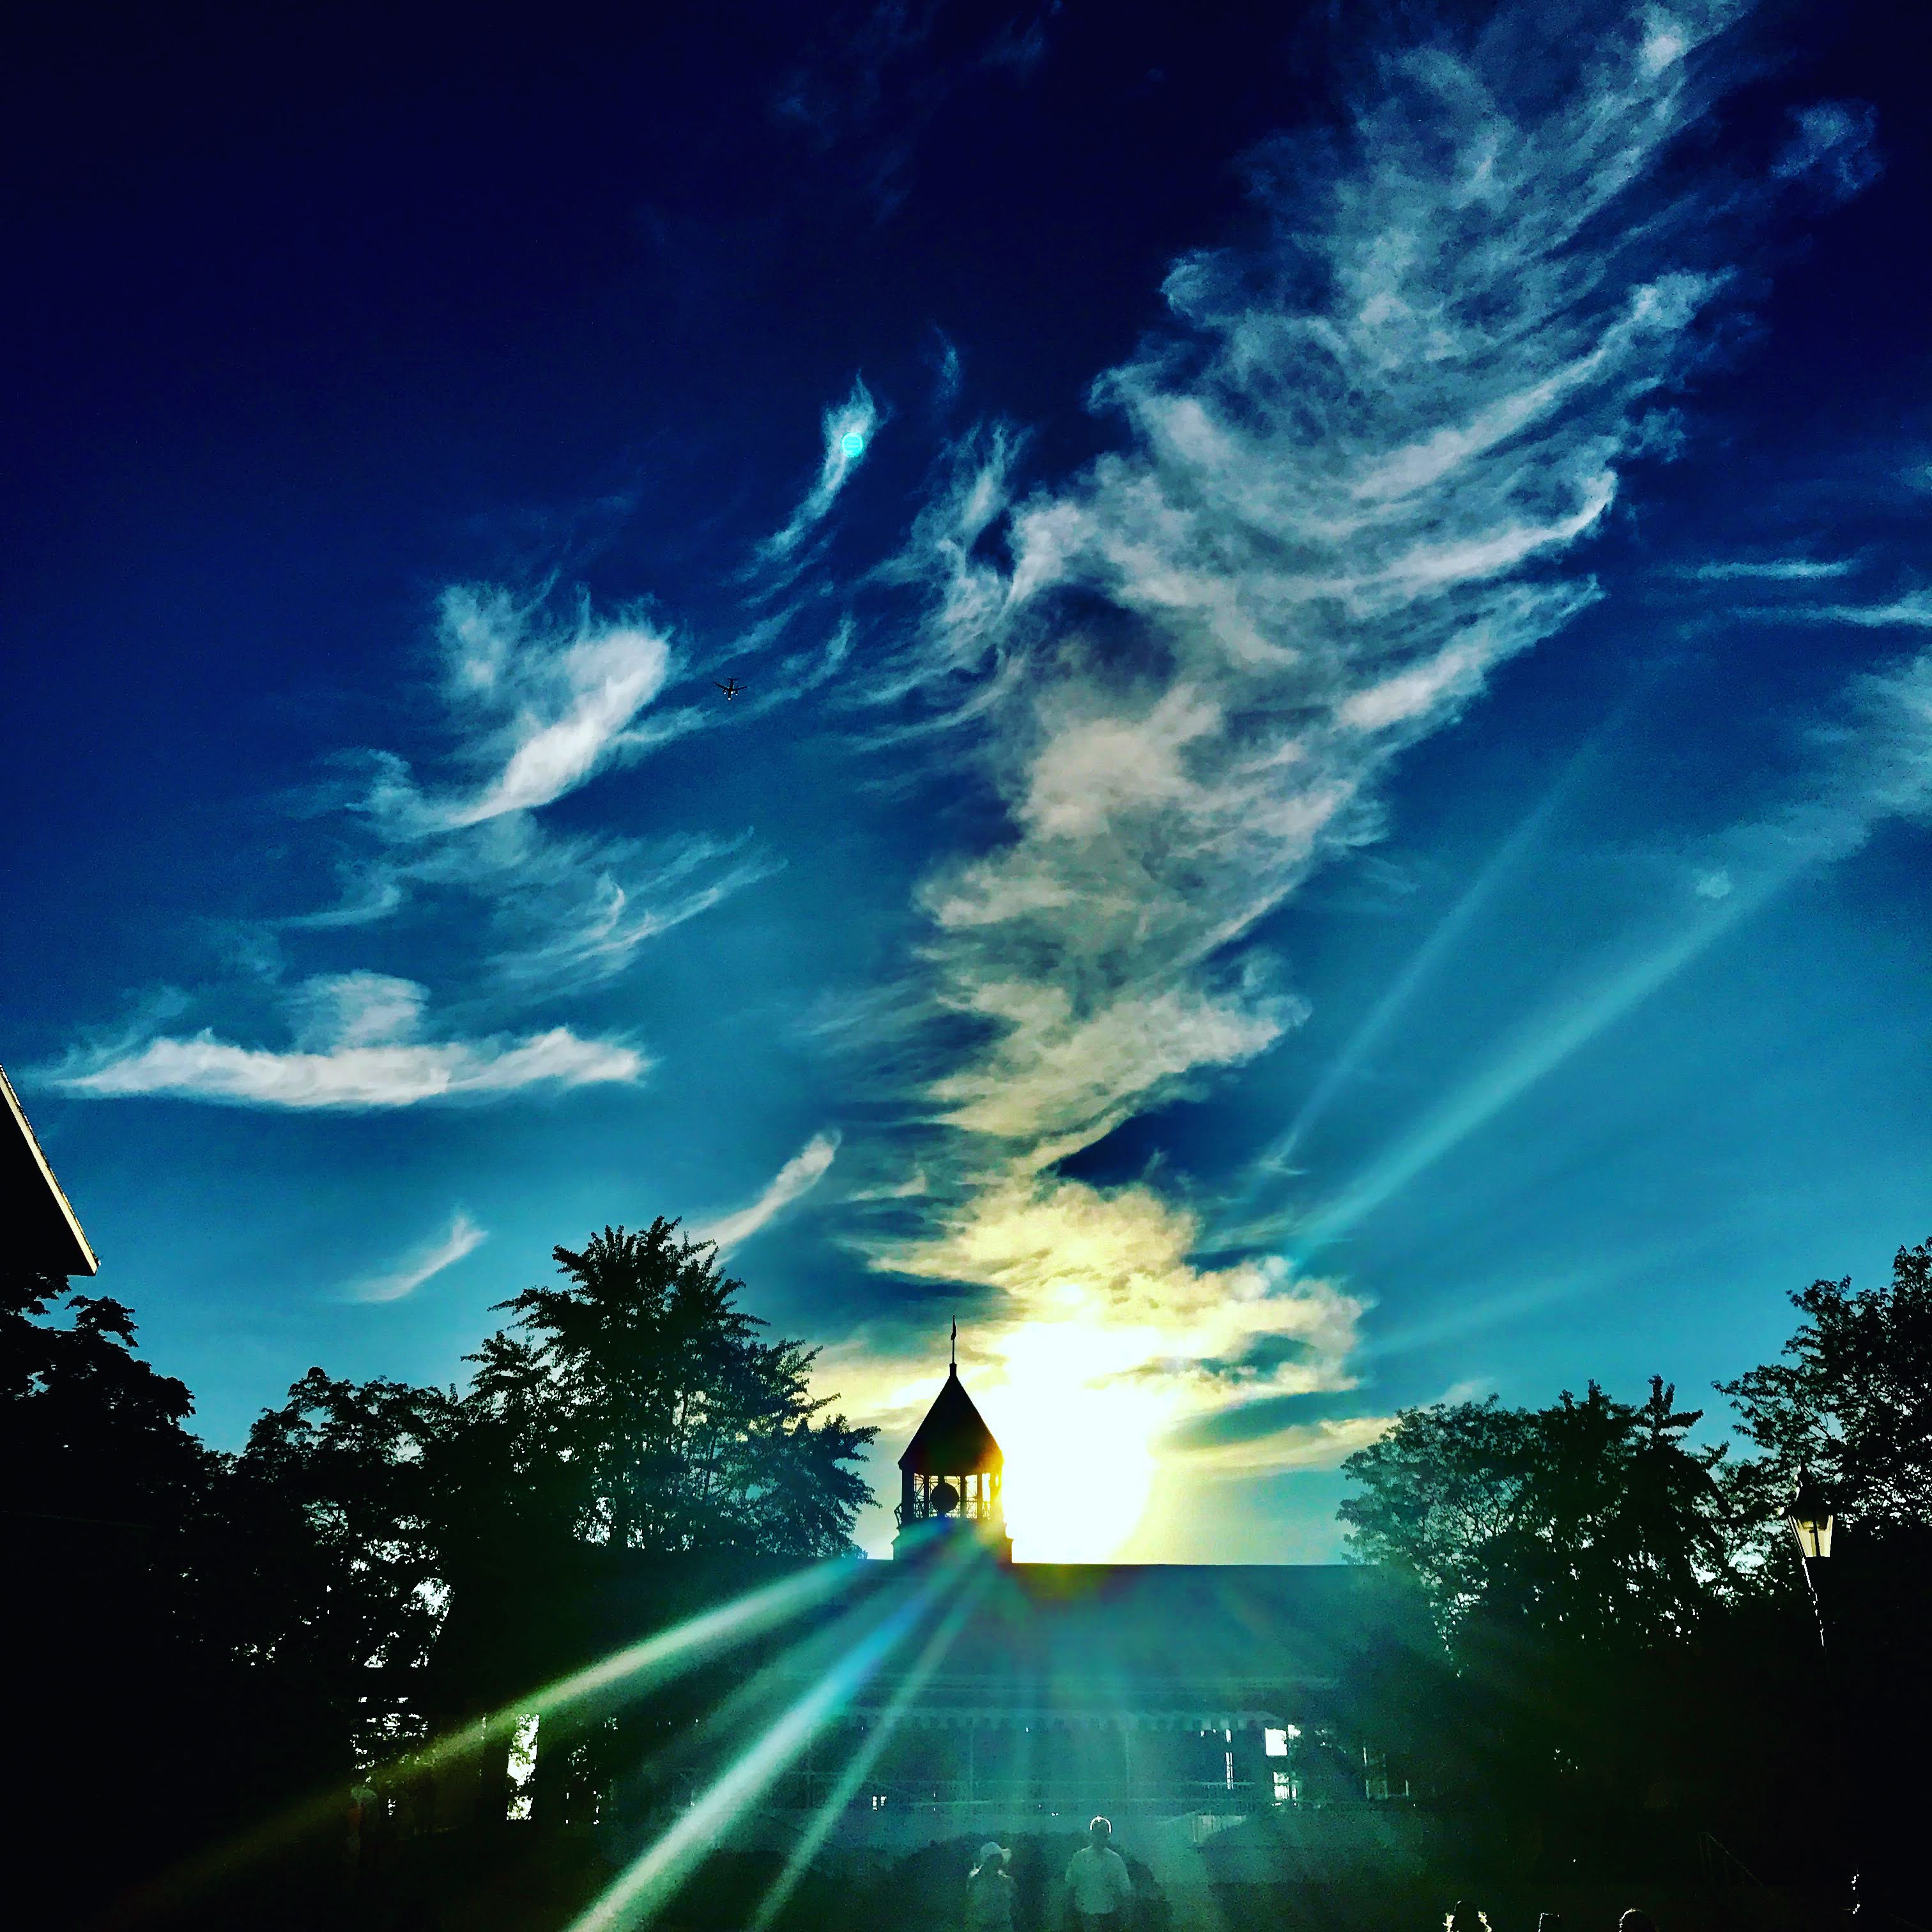 "The Sun Sets on Arlington Park" (Arlington Park, Arlington Heights, IL - August 14, 2021), photograph by Melissa Horton 